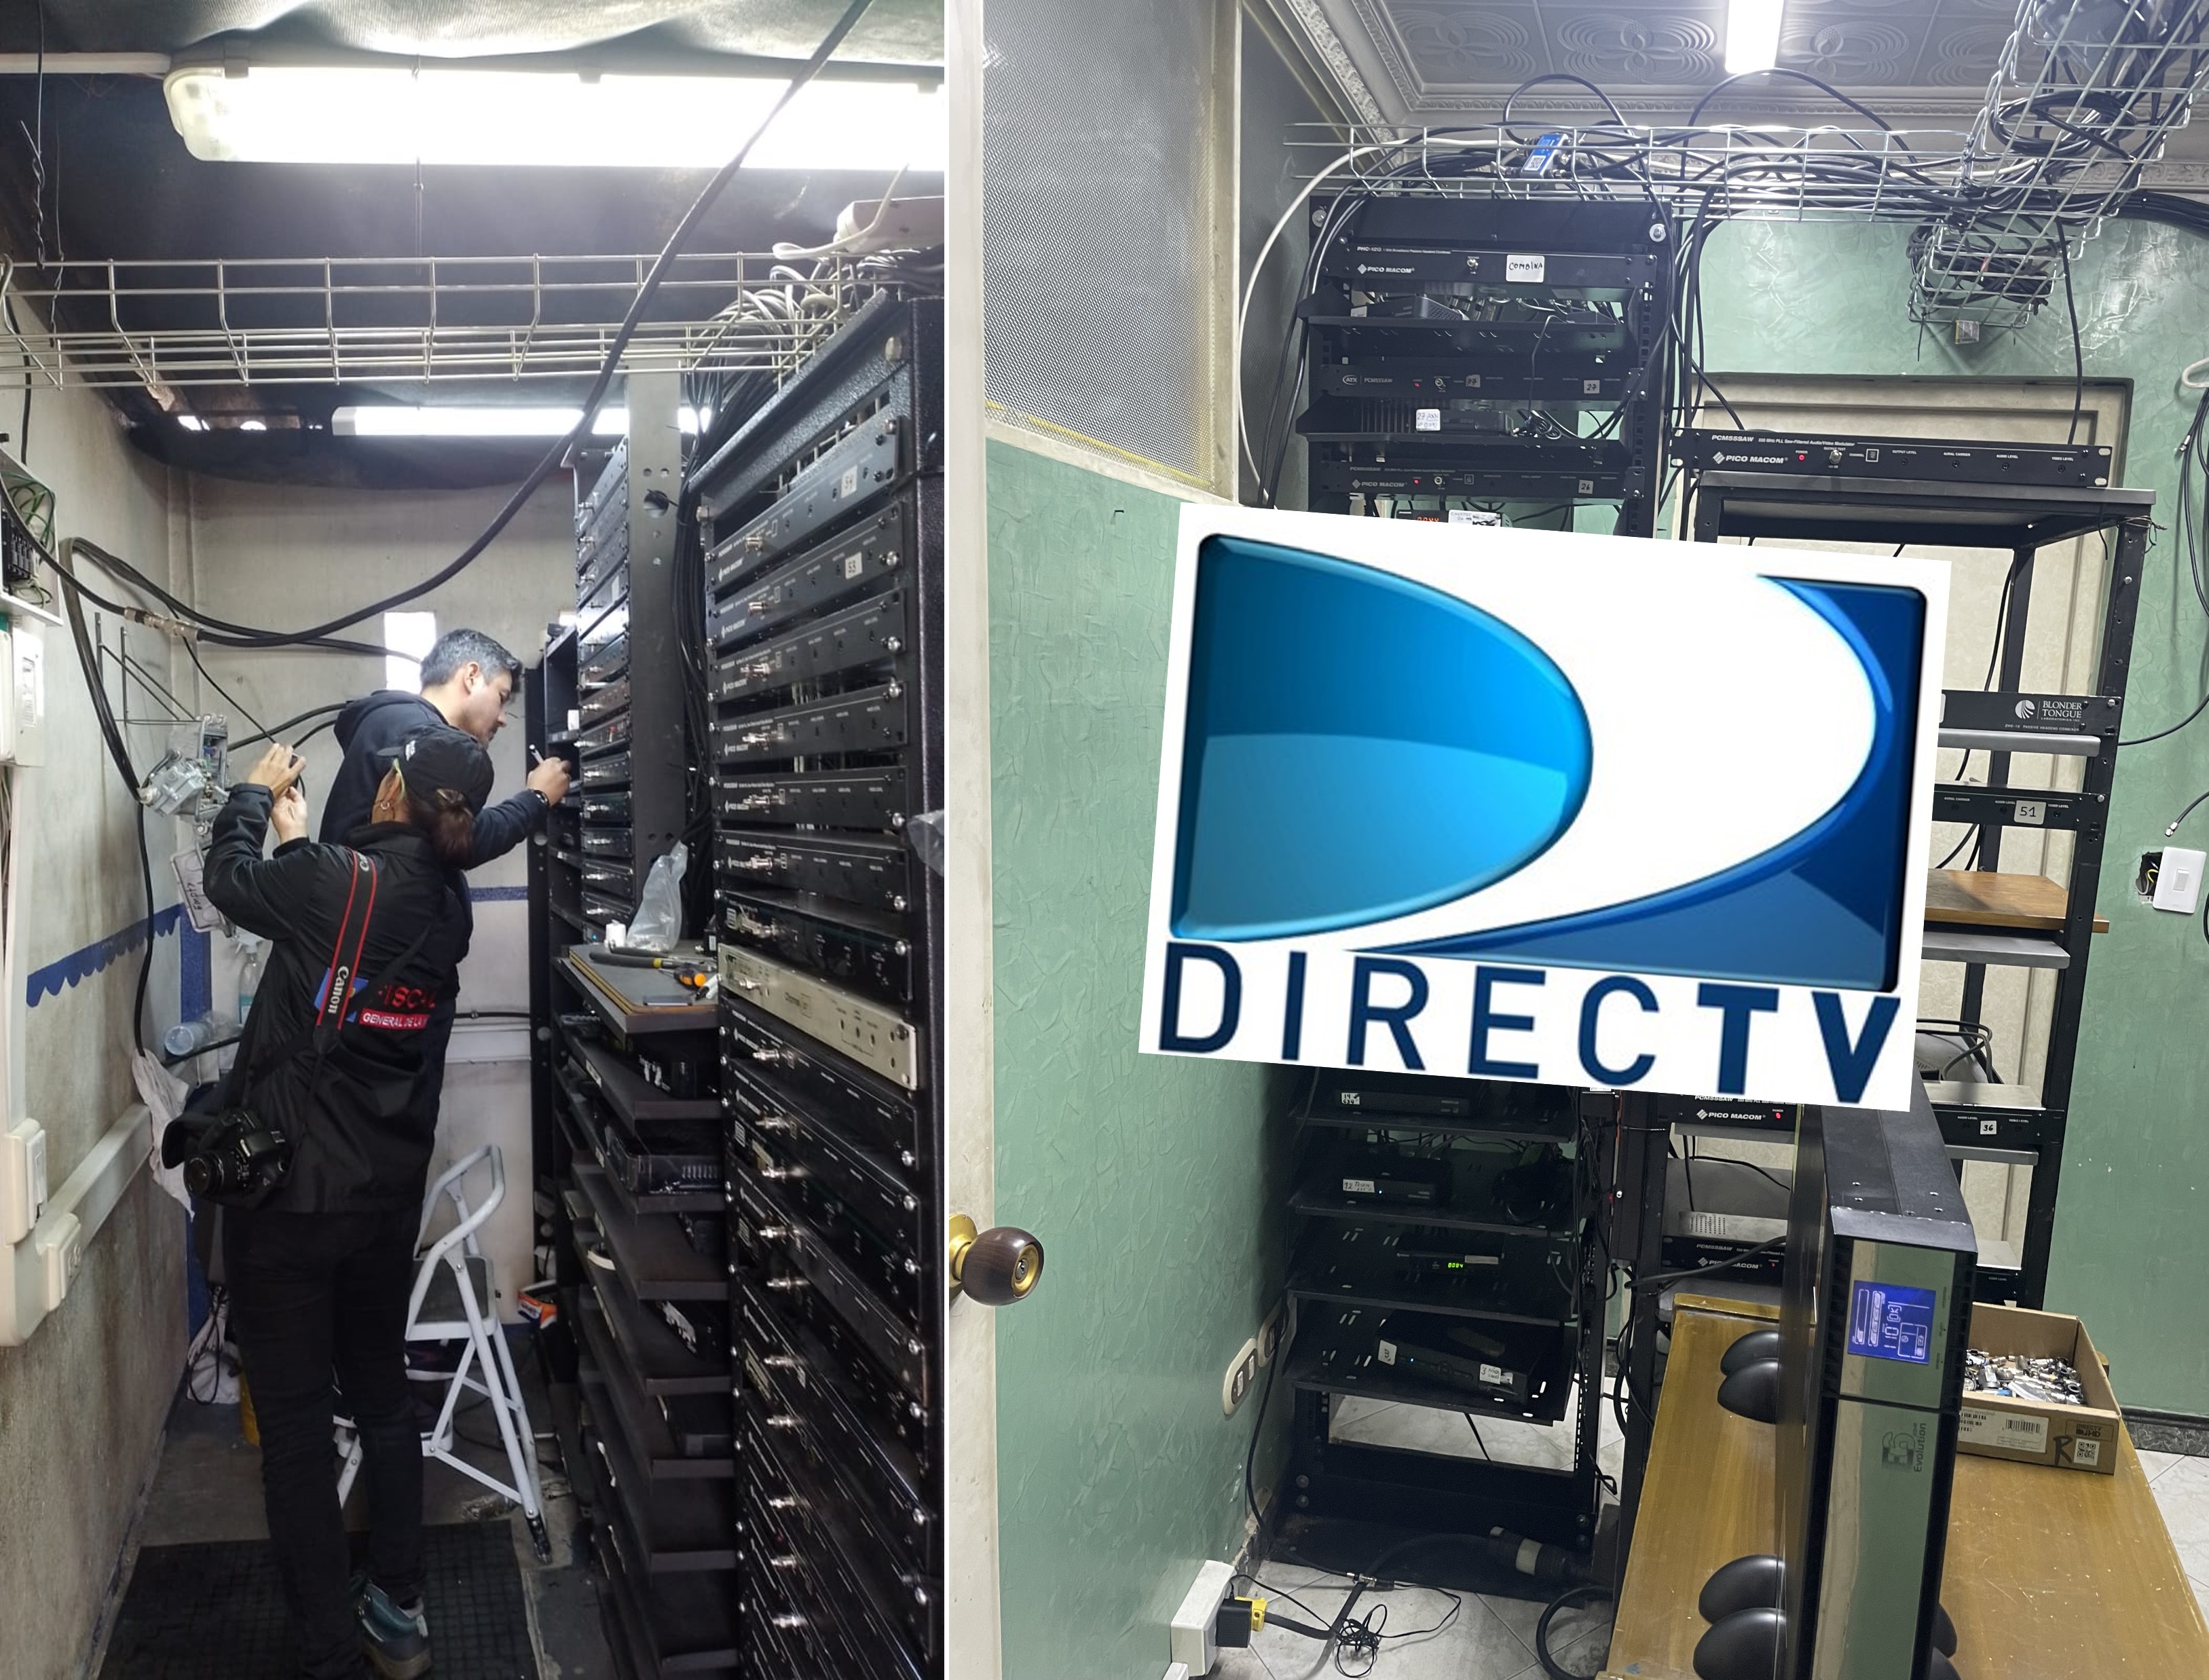 Directv informó que fue allanada una empresa en Bogotá, llamada Teleprensa, y que usaba su señal sin permiso. Tenía más de 50 canales.